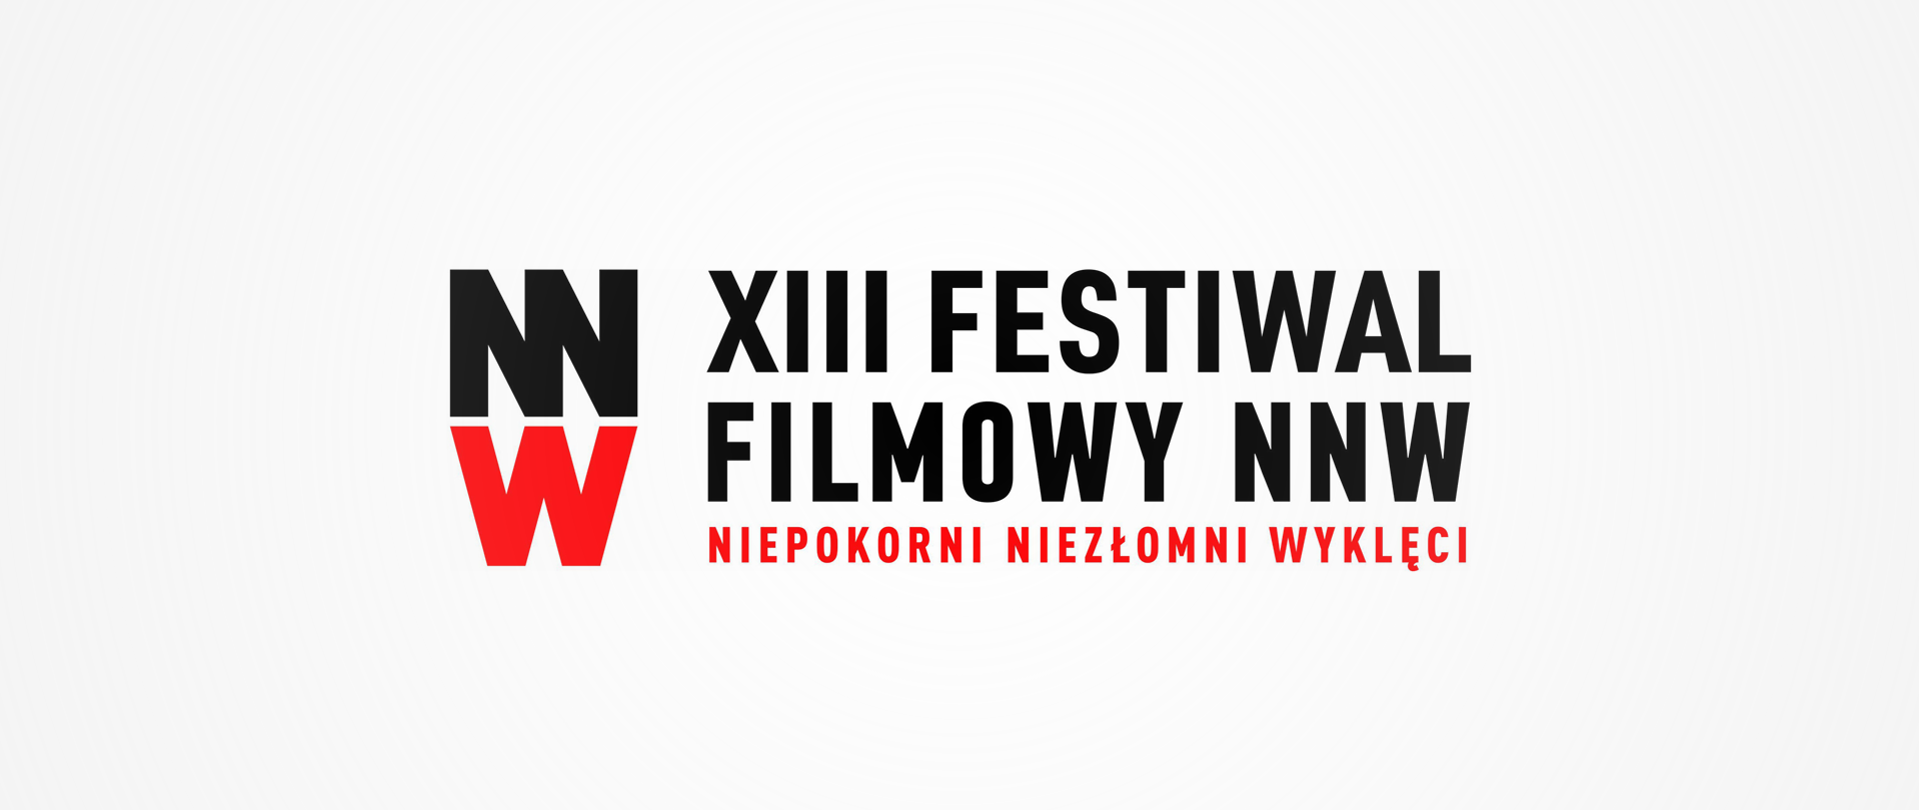 Festiwal Niepokorni, Niezłomni, Wyklęci – zapraszamy do udziału! 